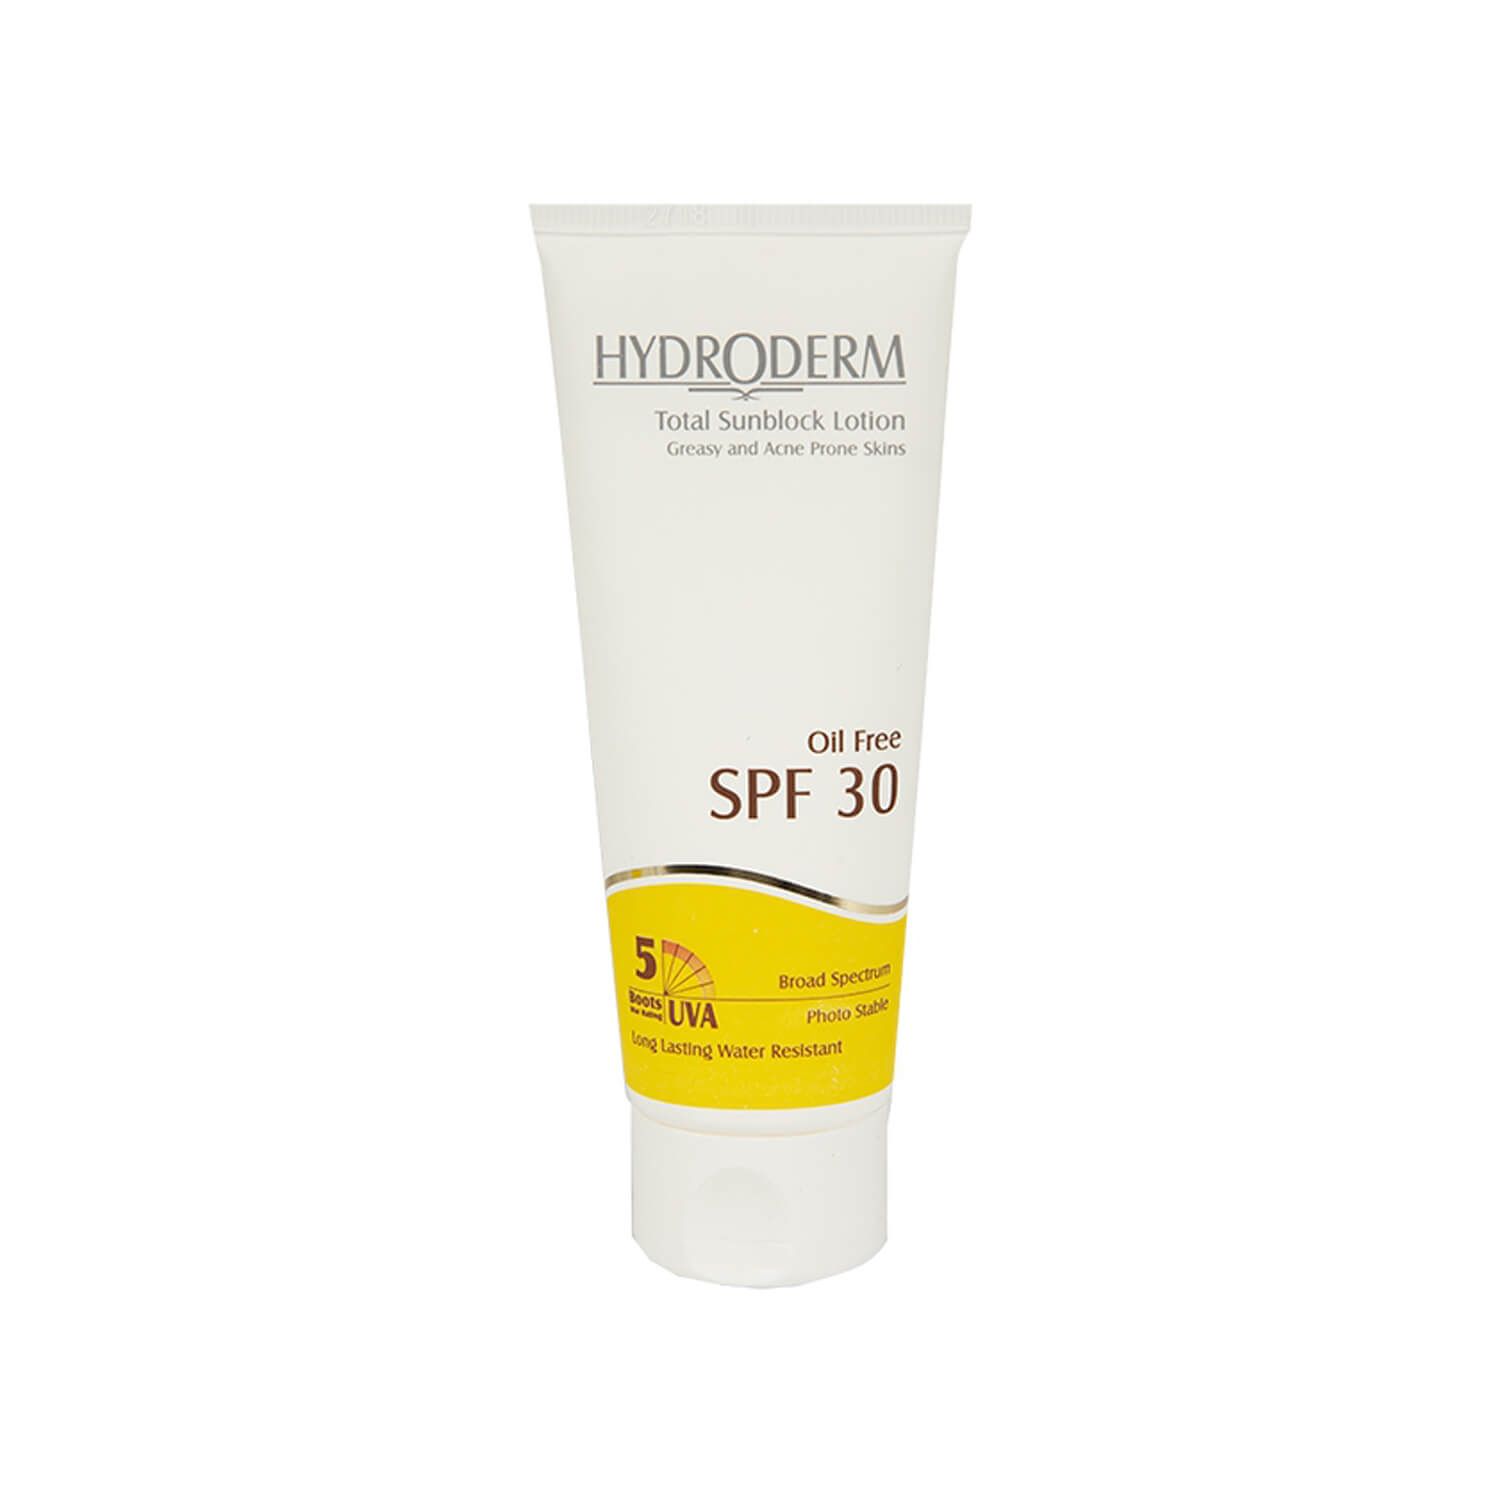 لوسیون ضد آفتاب فاقد چربی هیدرودرم مدل Greasy & Acne Prone Skins SPF30 حجم 75 میلی لیتر - بی رنگ